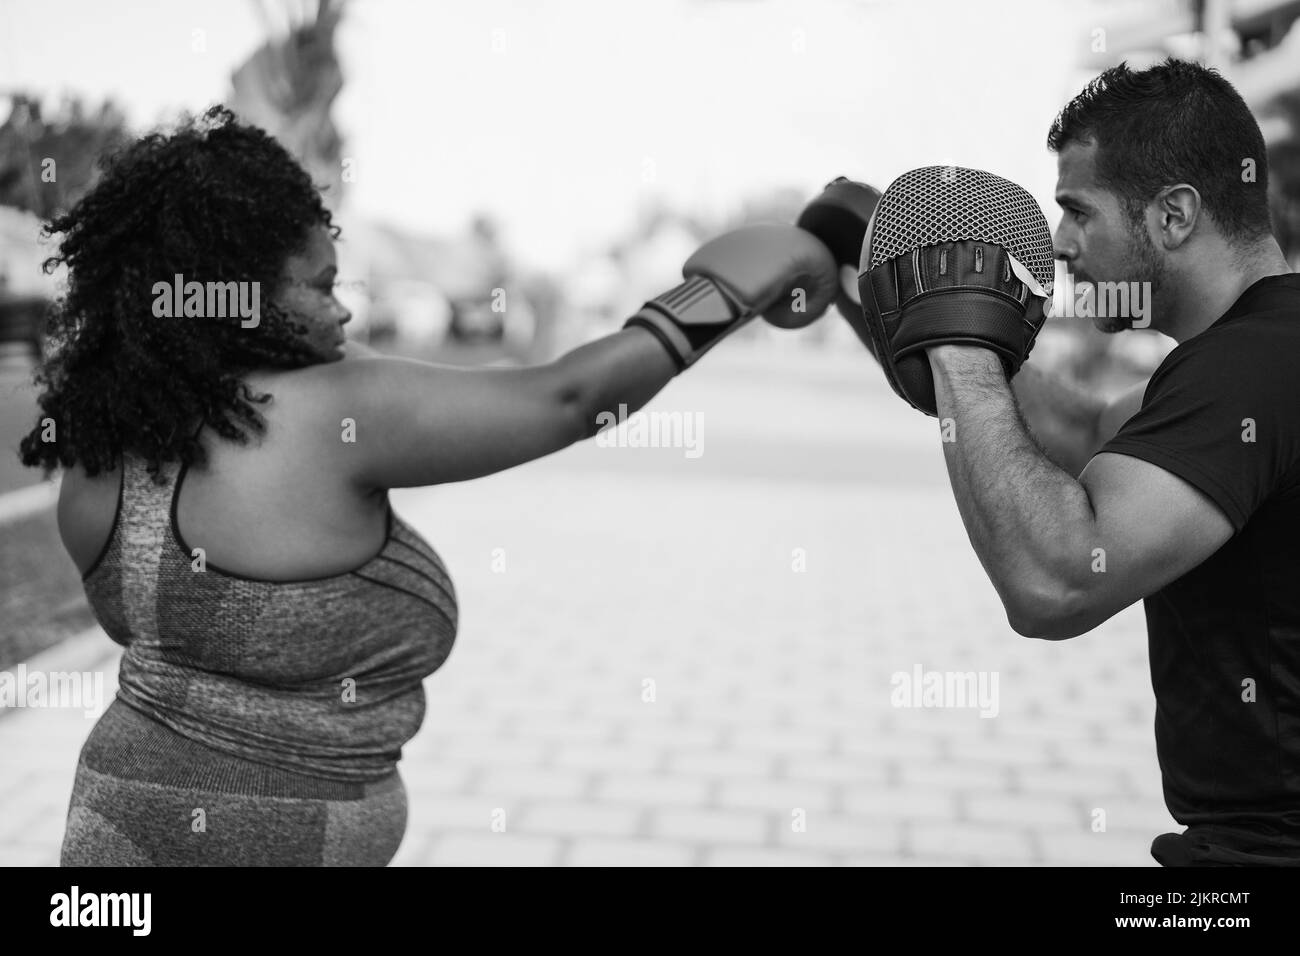 Femme africaine curvy et entraîneur personnel faisant la séance d'entraînement de boxe en extérieur - Focus sur l'homme gant - montage noir et blanc Banque D'Images